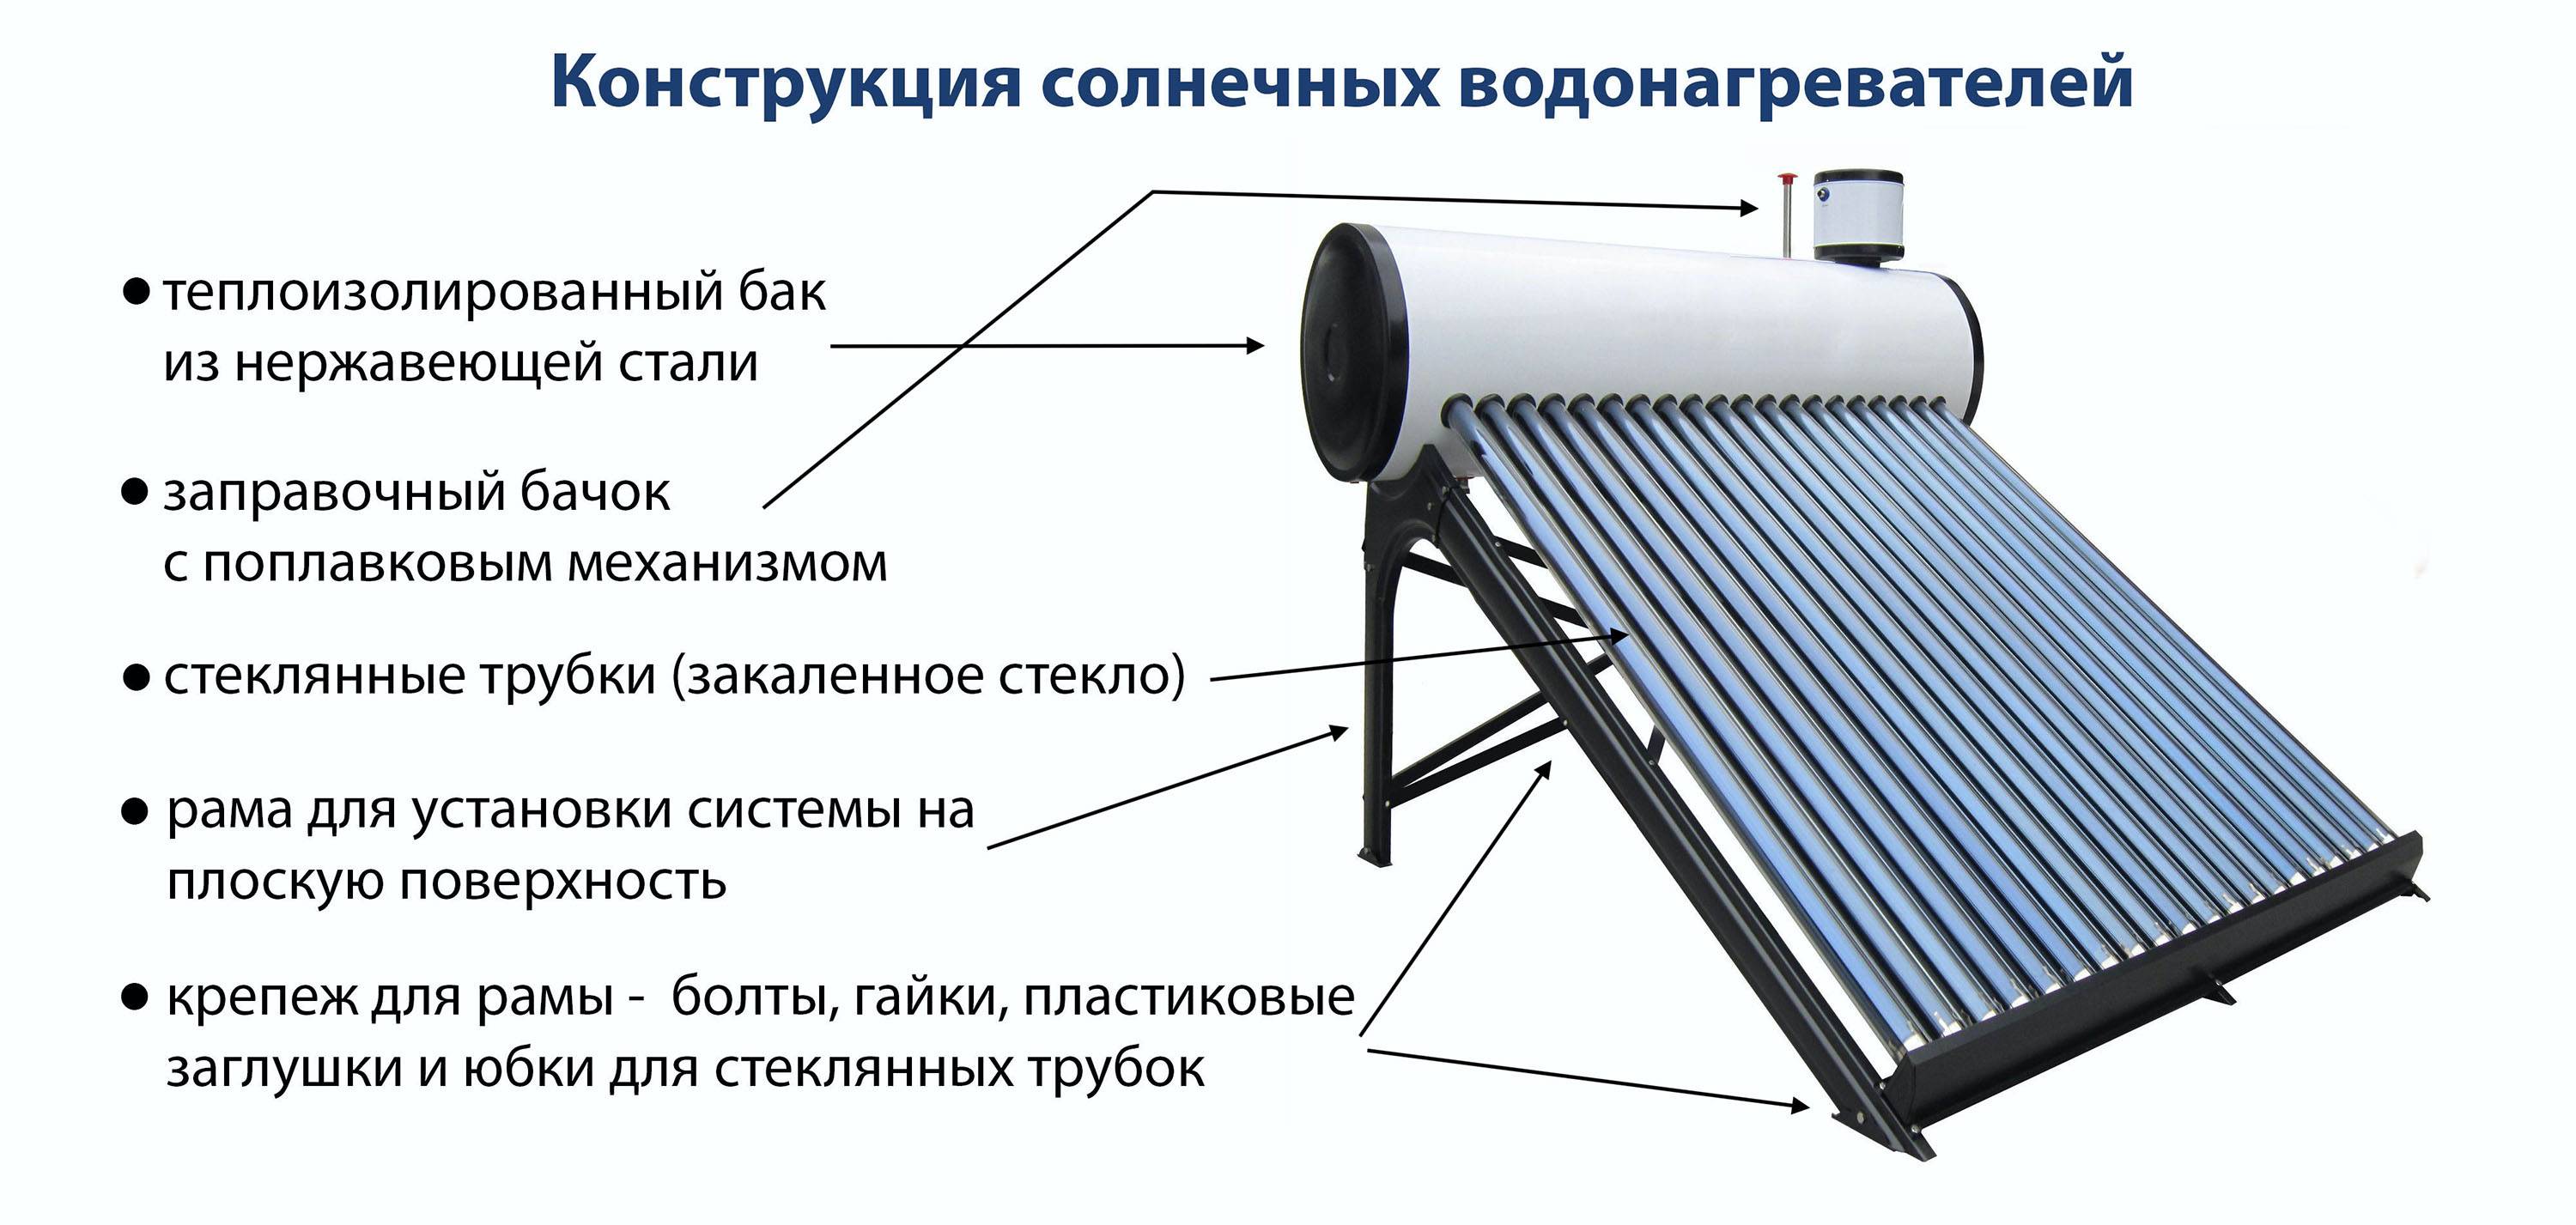 Солнечный водонагреватель своими руками - схема сборки, монтаж, устройство и типы приборов